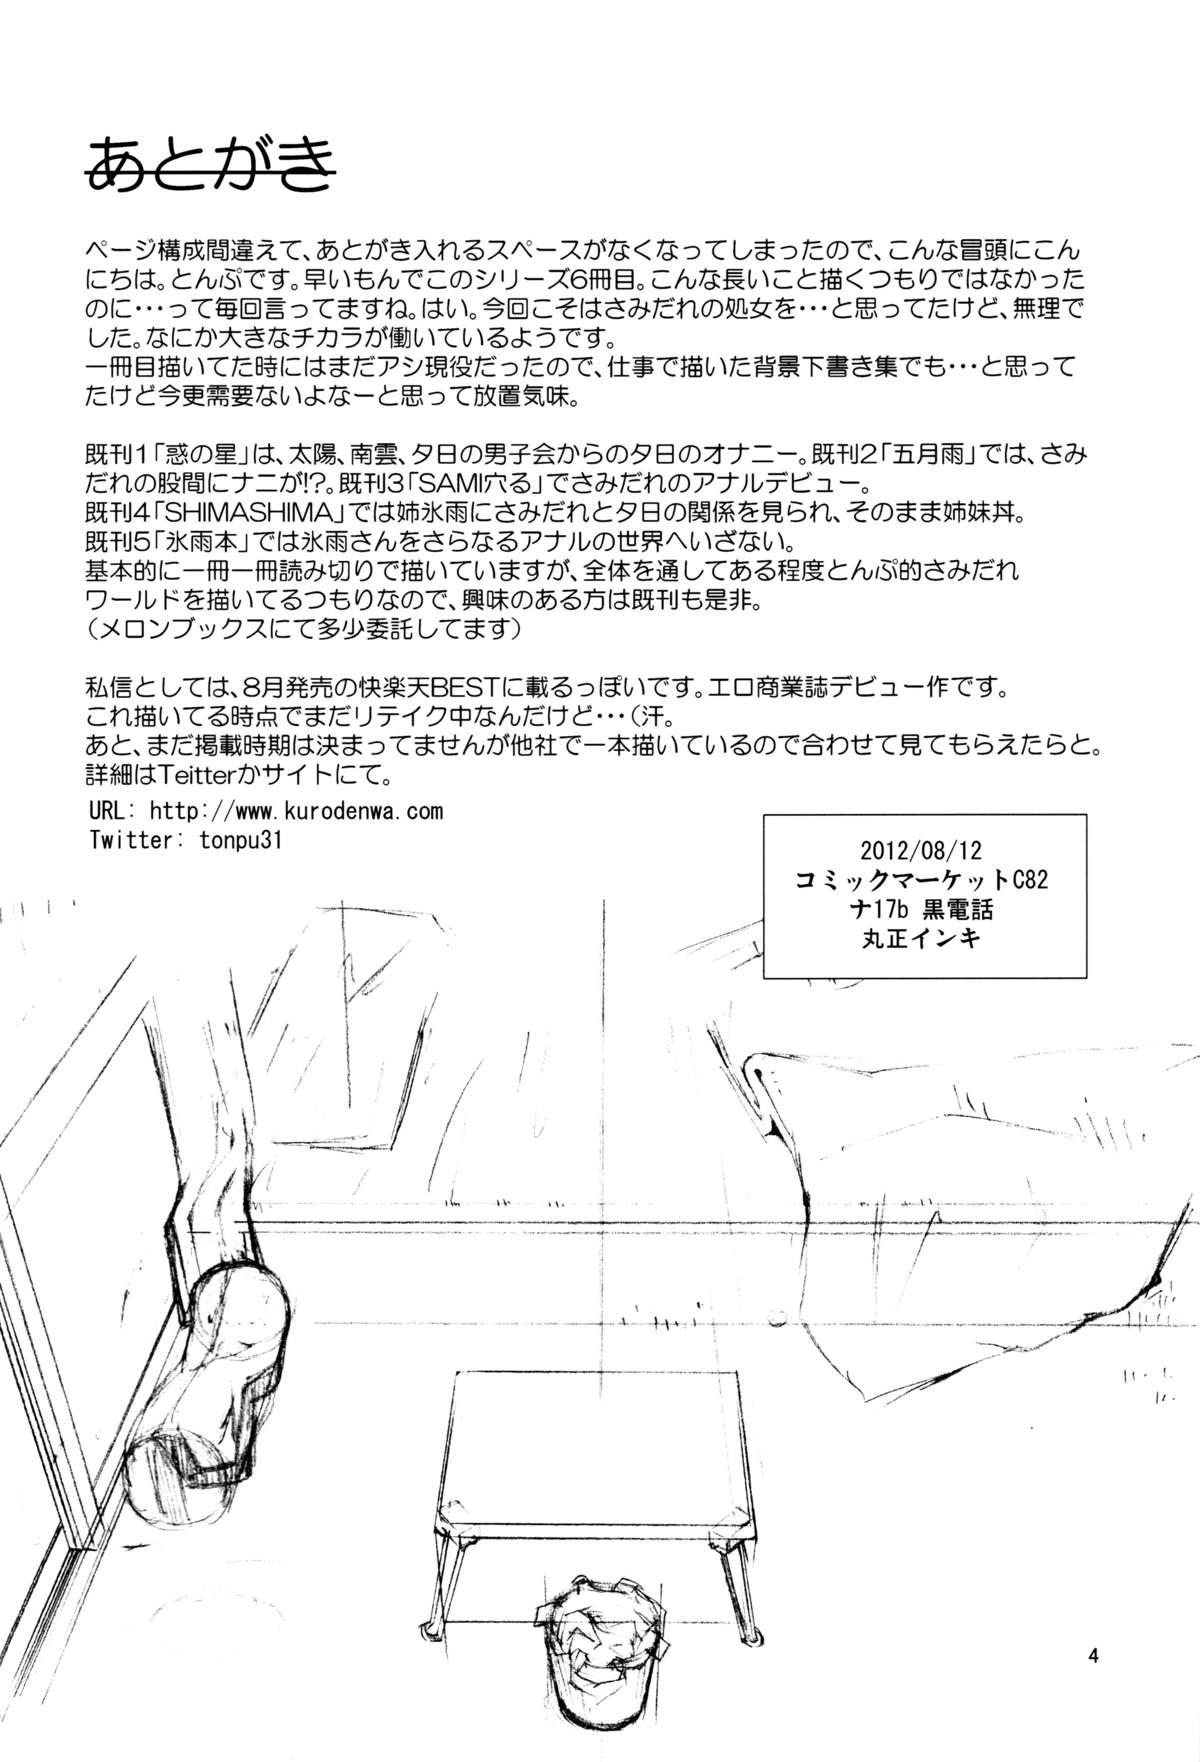 Pegging Yuki × Suba - Hoshi no samidare Brunet - Page 3